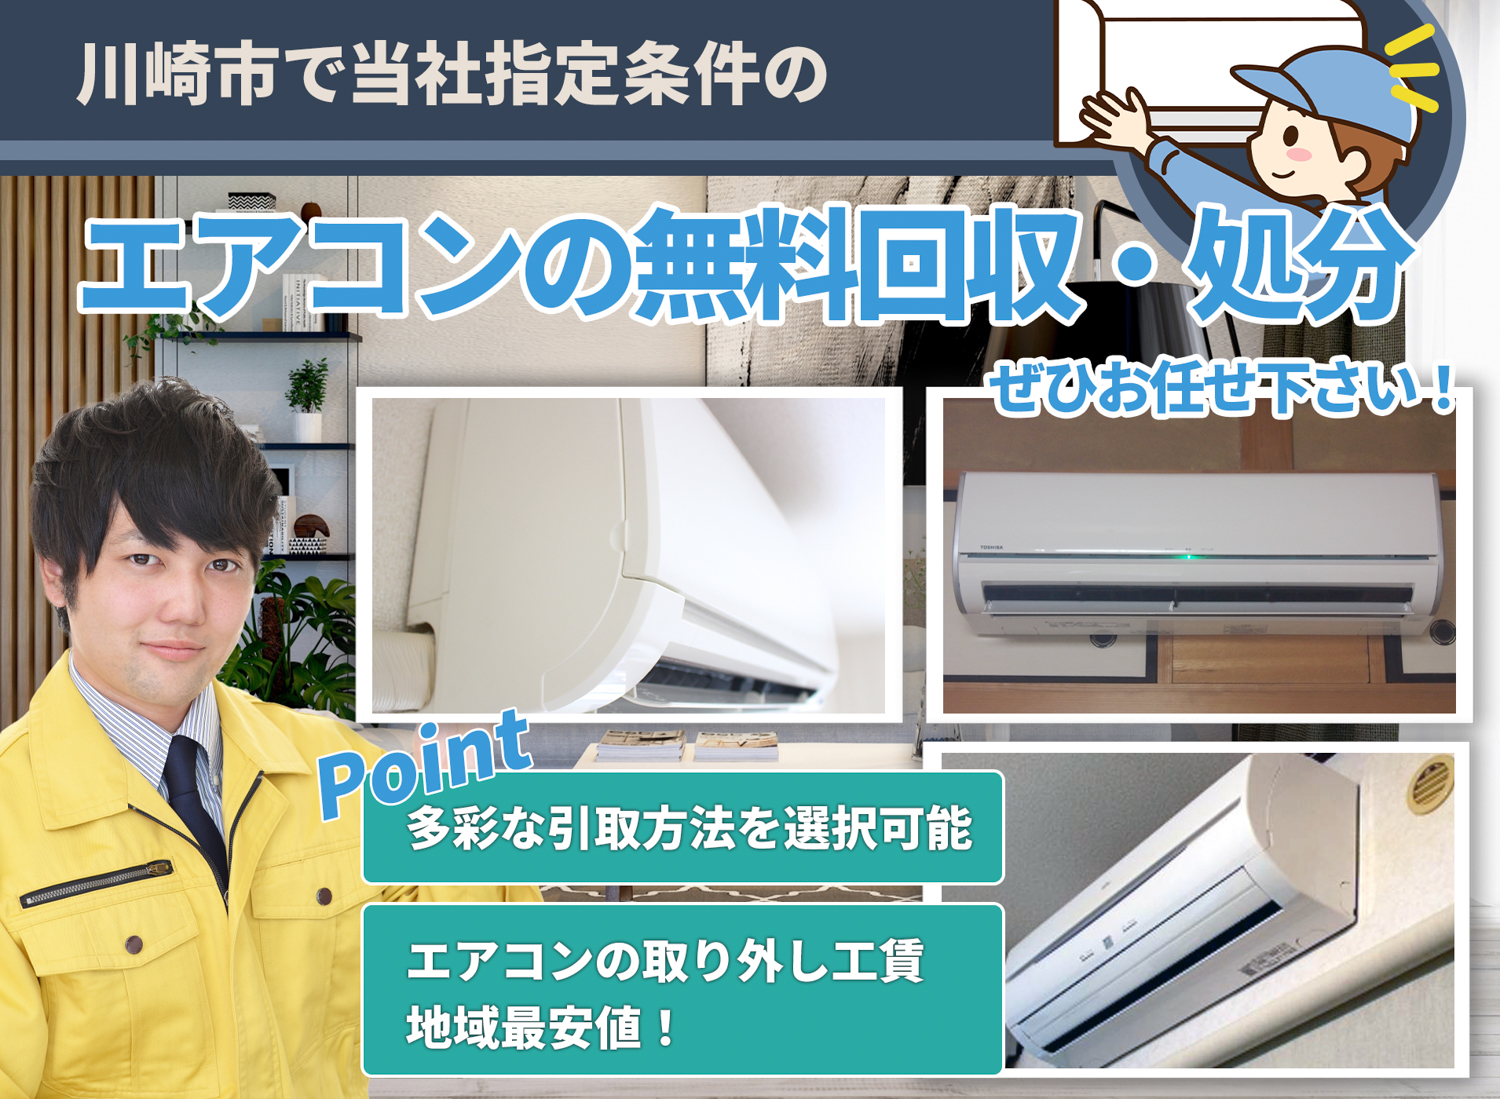 川崎市で「丁寧な作業」で安心をエアコン無料回収処分隊のエアコン無料回収サービス